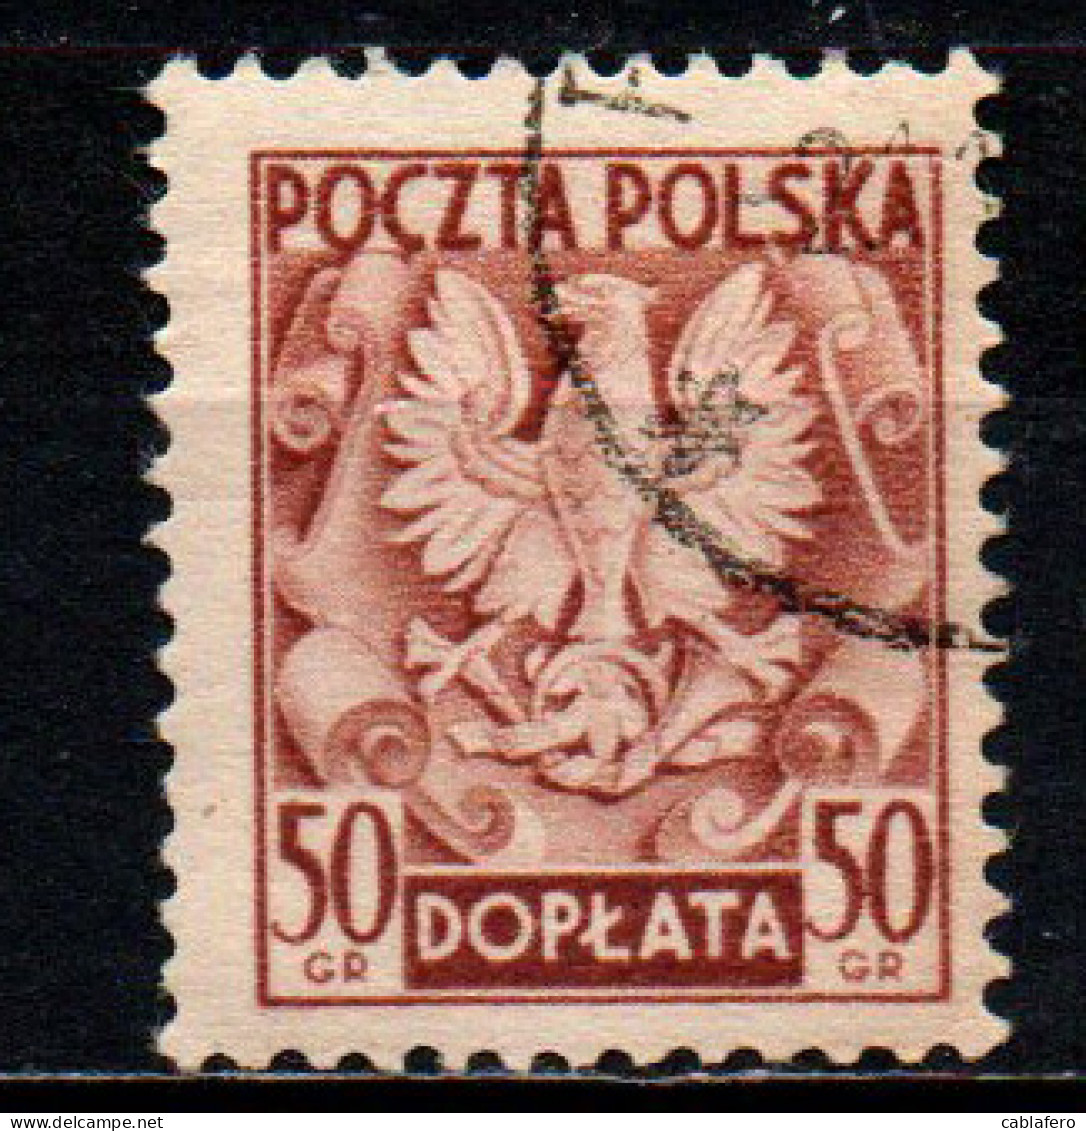 POLONIA - 1950 - Polish Eagle - USATO - Postage Due